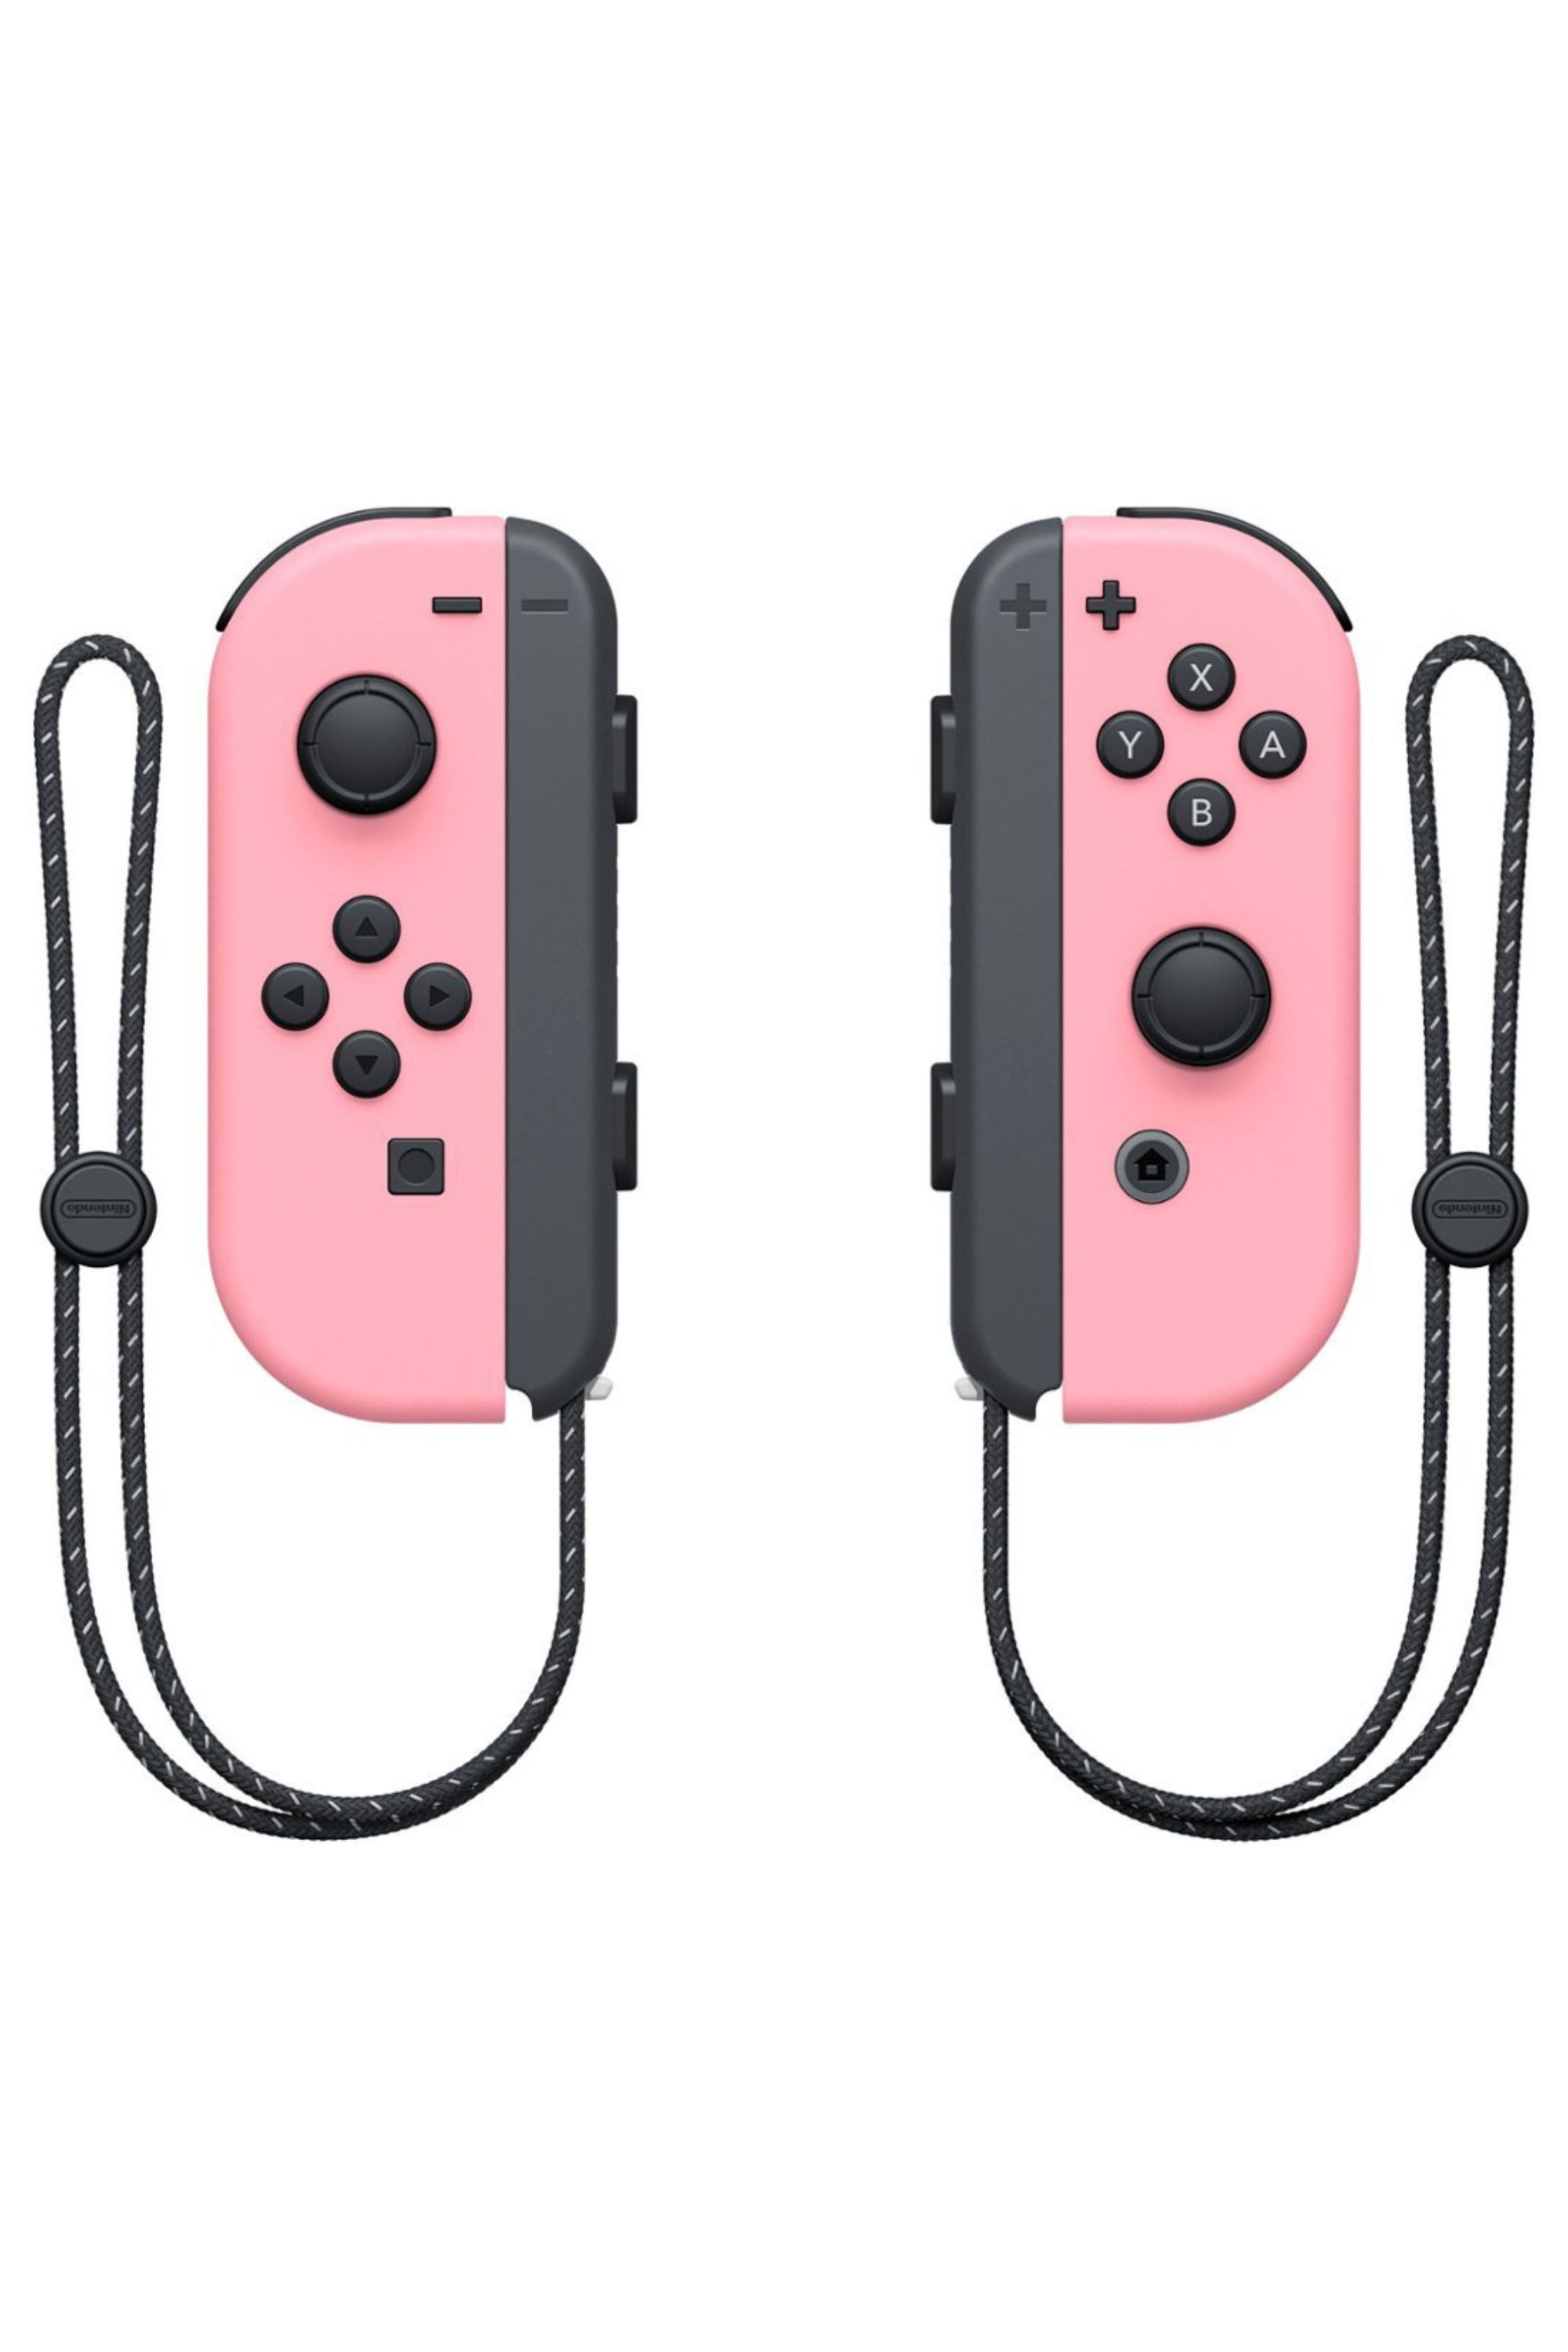 Nintendo Switch: All the Joy-Con Designs Released So Far